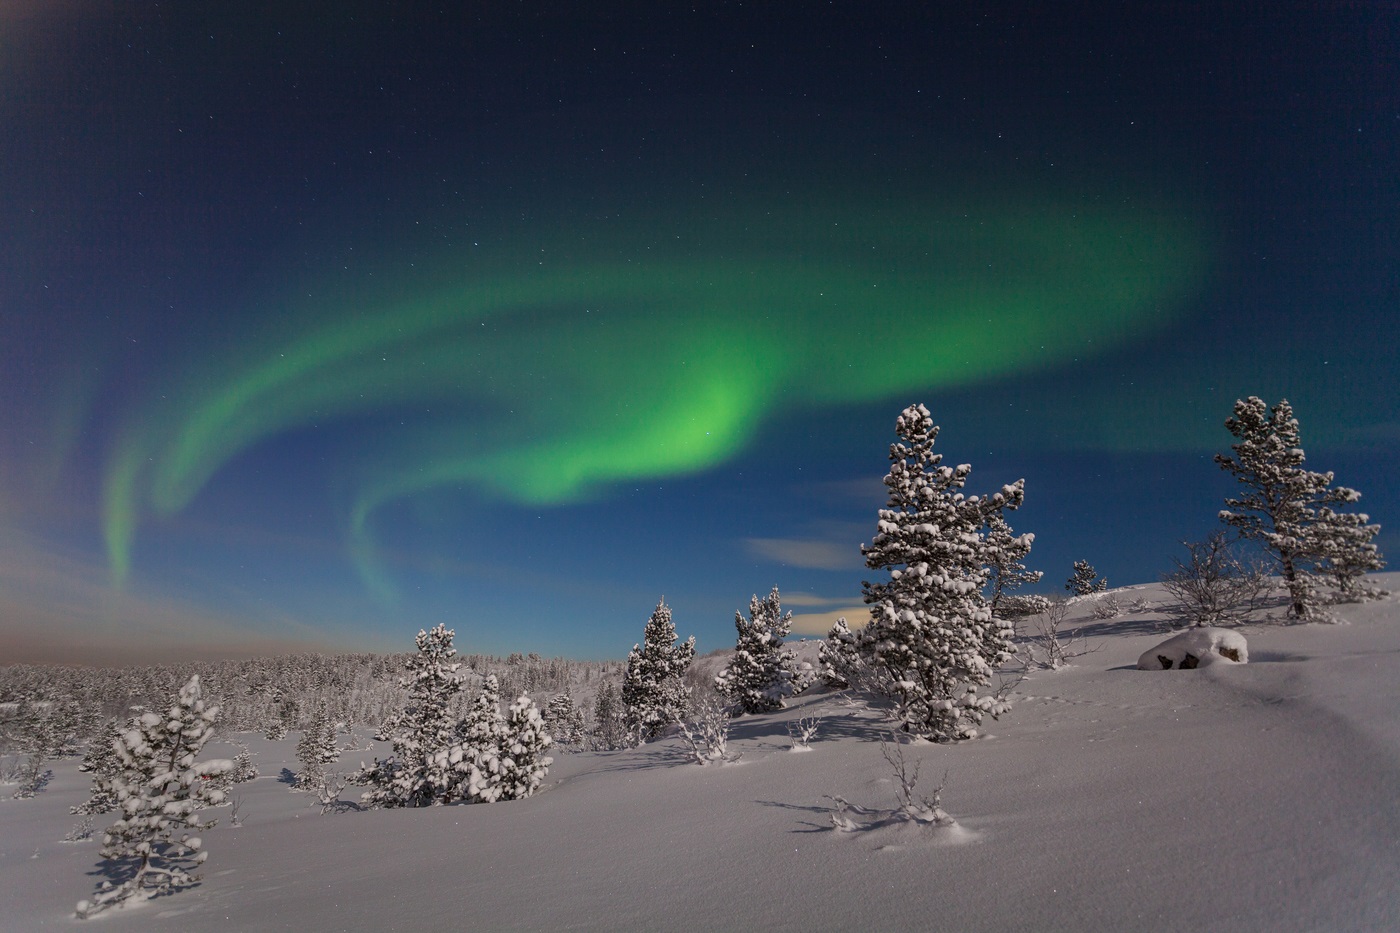 Ձմռանը հյուսիսային լույսերի գեղեցիկ լուսանկարը